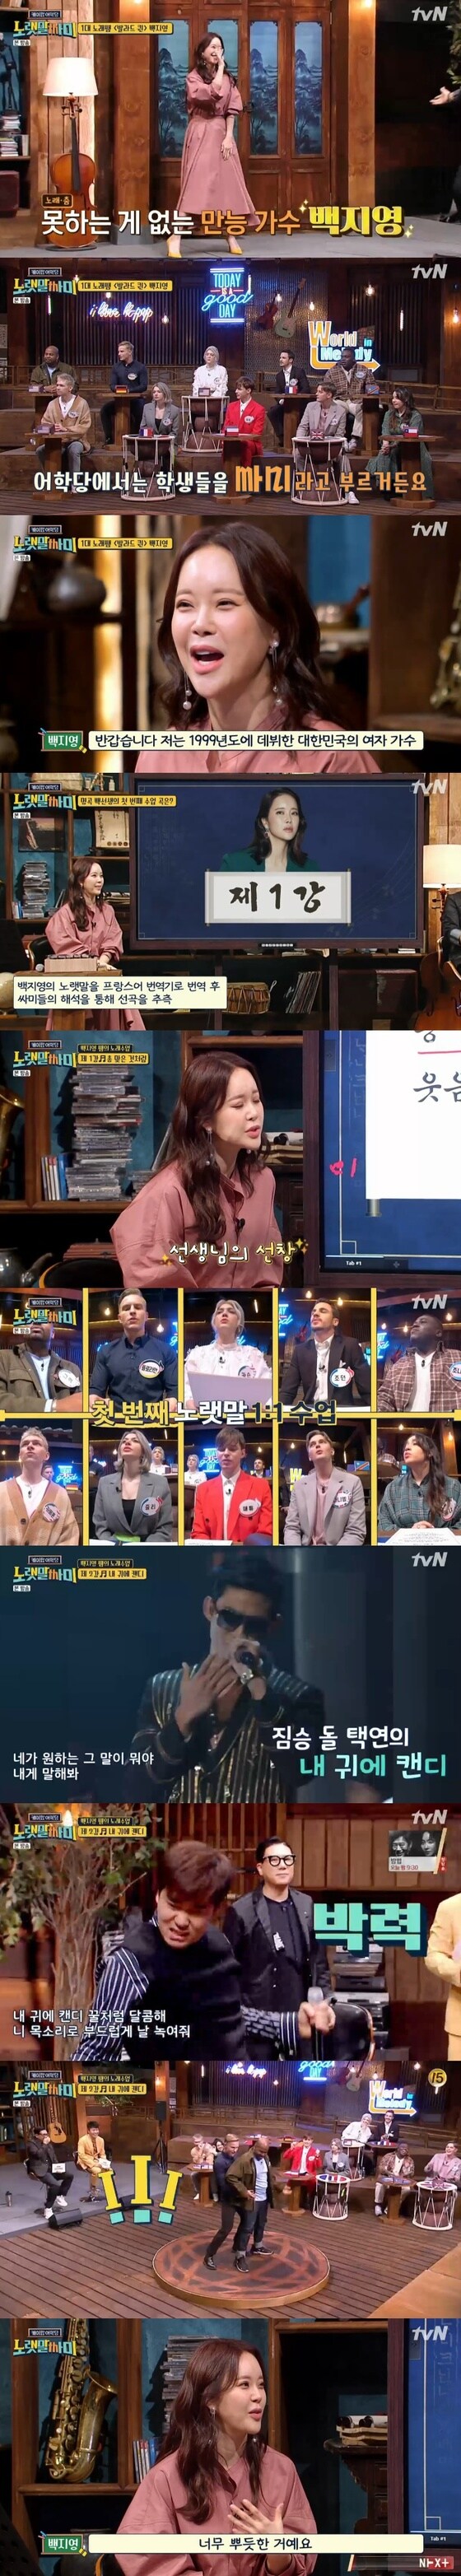 tvN '케이팝 어학당 - 노랫말싸미' 캡처 © 뉴스1